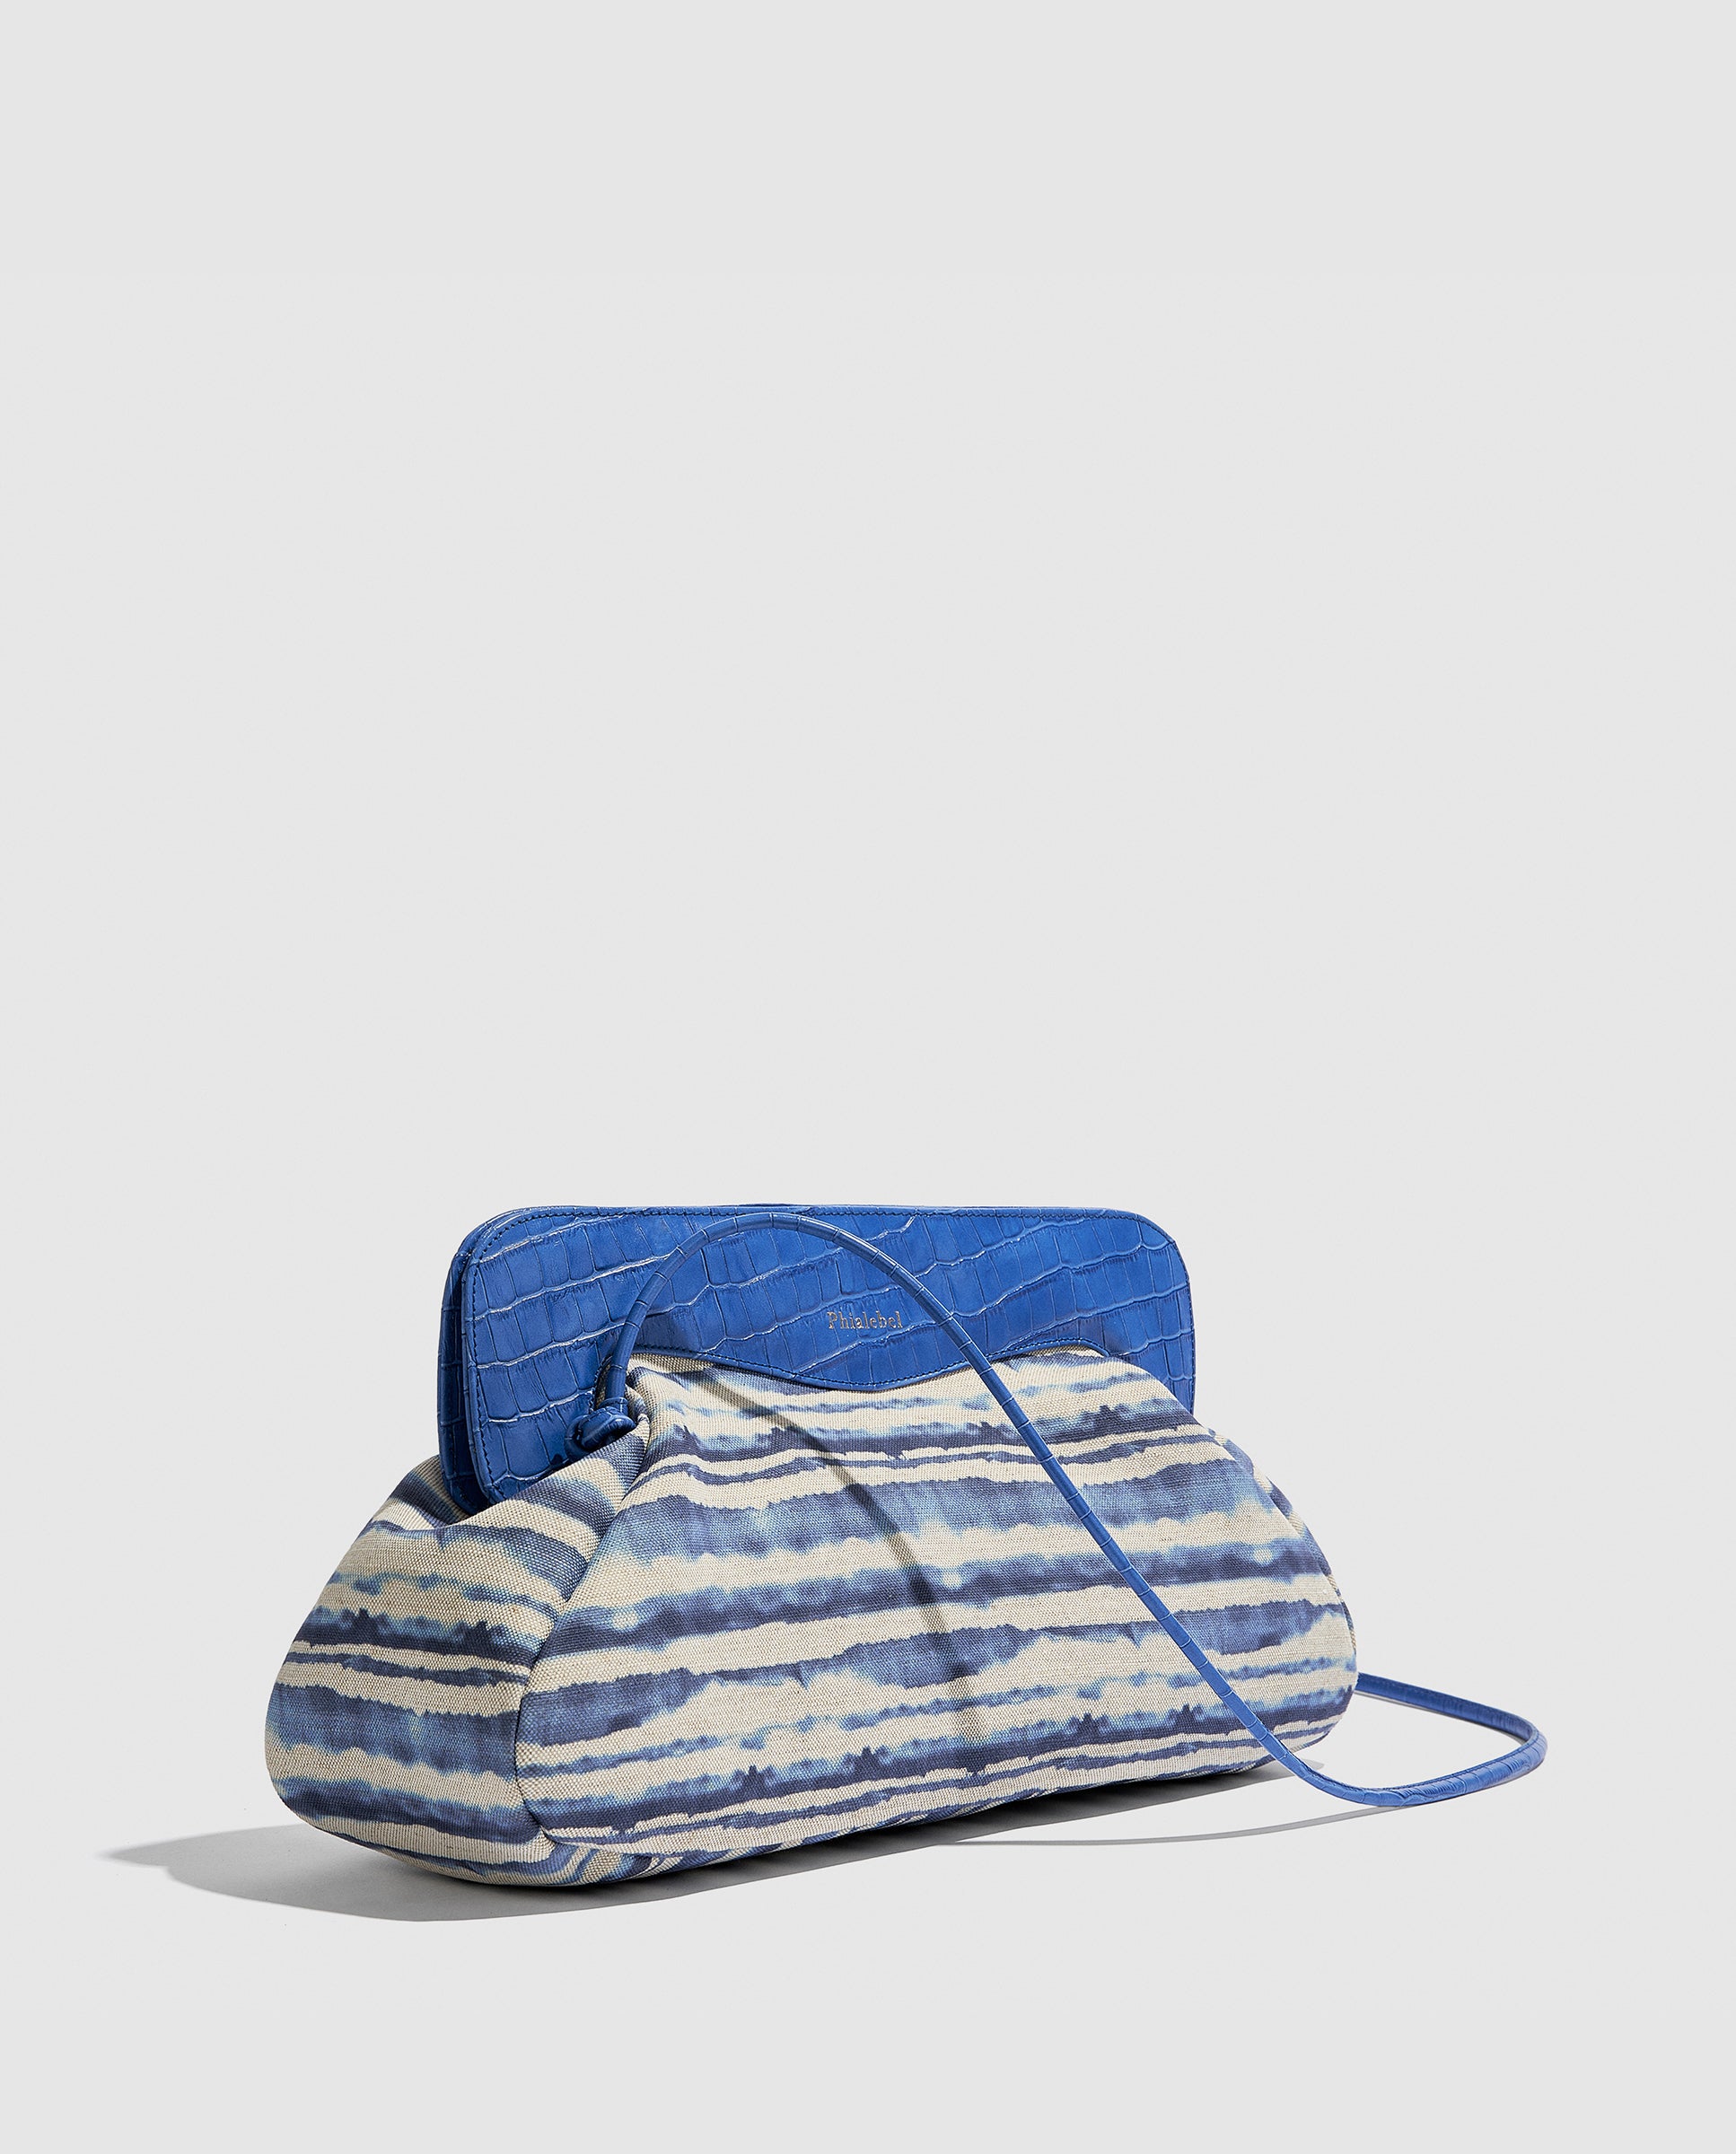 Detalle de bolso en color azul acabado cebra